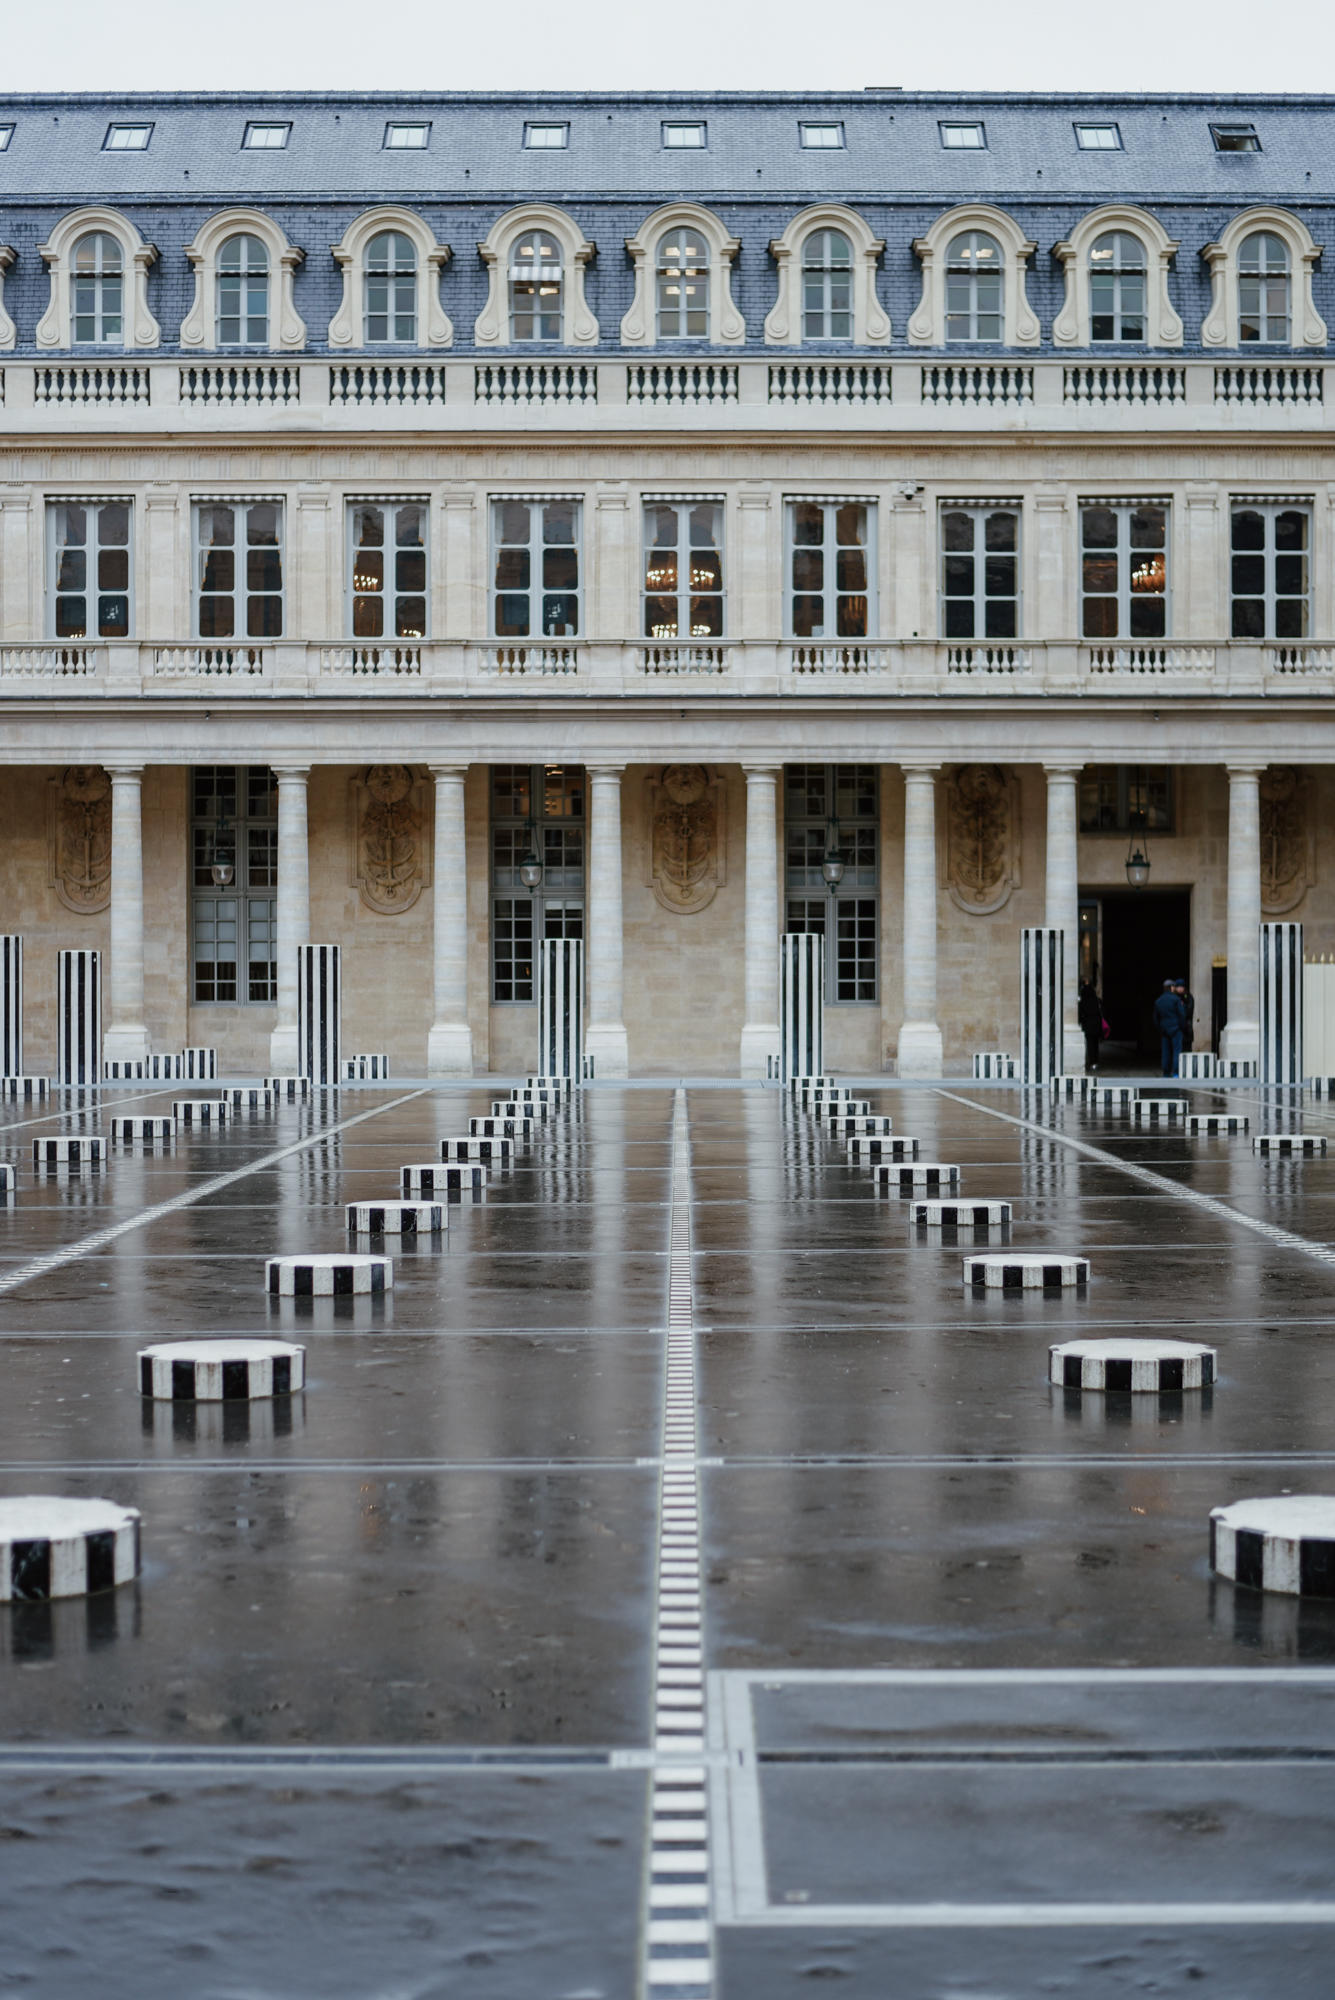 Les Deux Plateaux Colonnes de Buren at Palais Royal in Paris